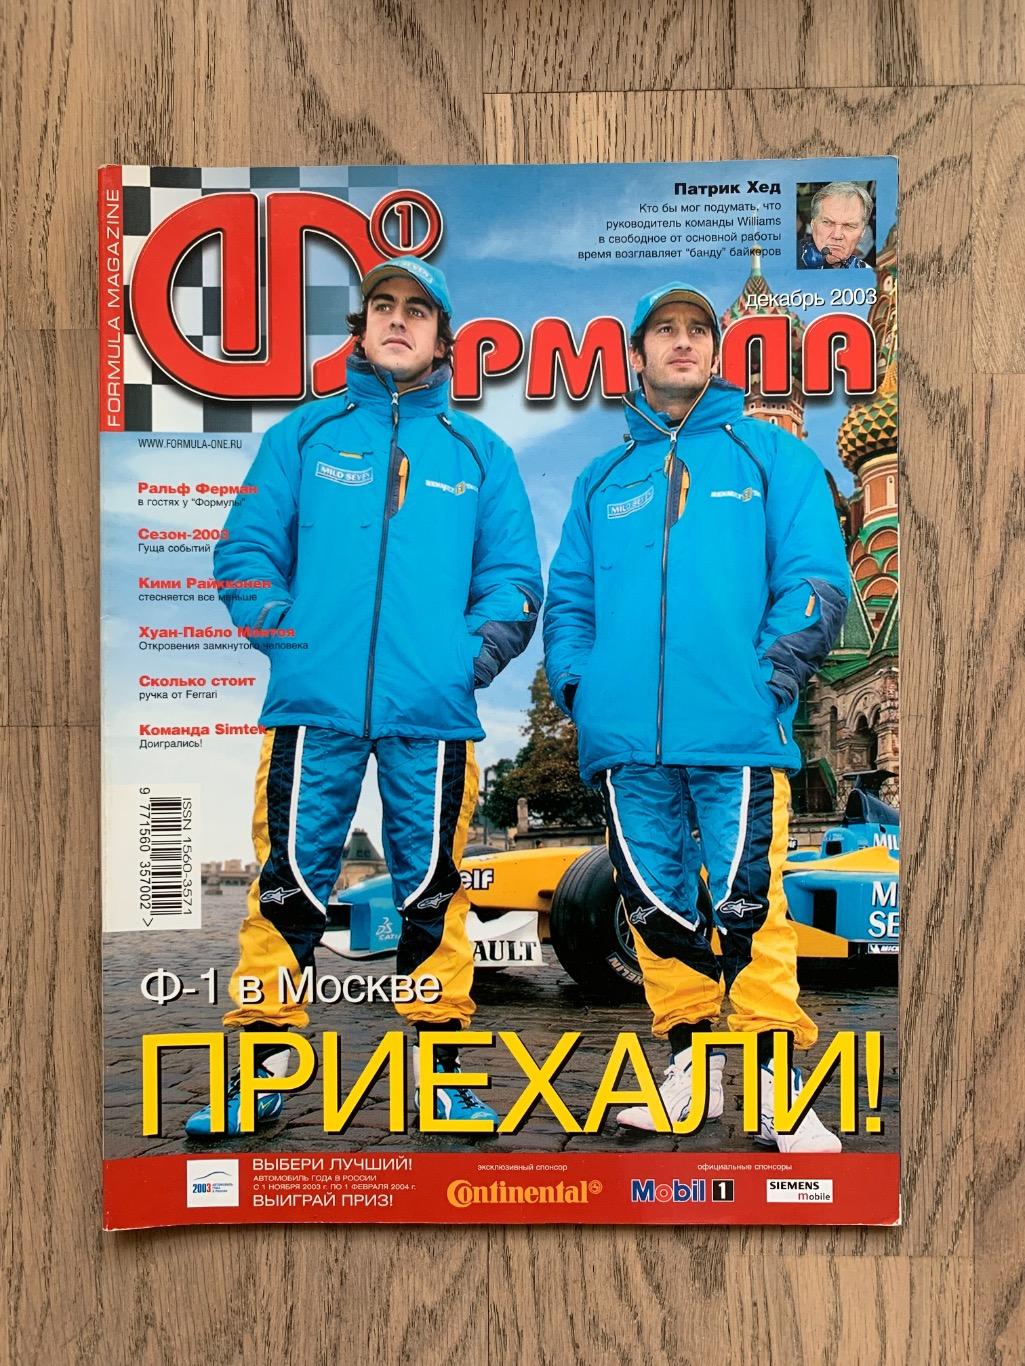 Журнал Формула 1 (Formula Magazine) / декабрь 2003